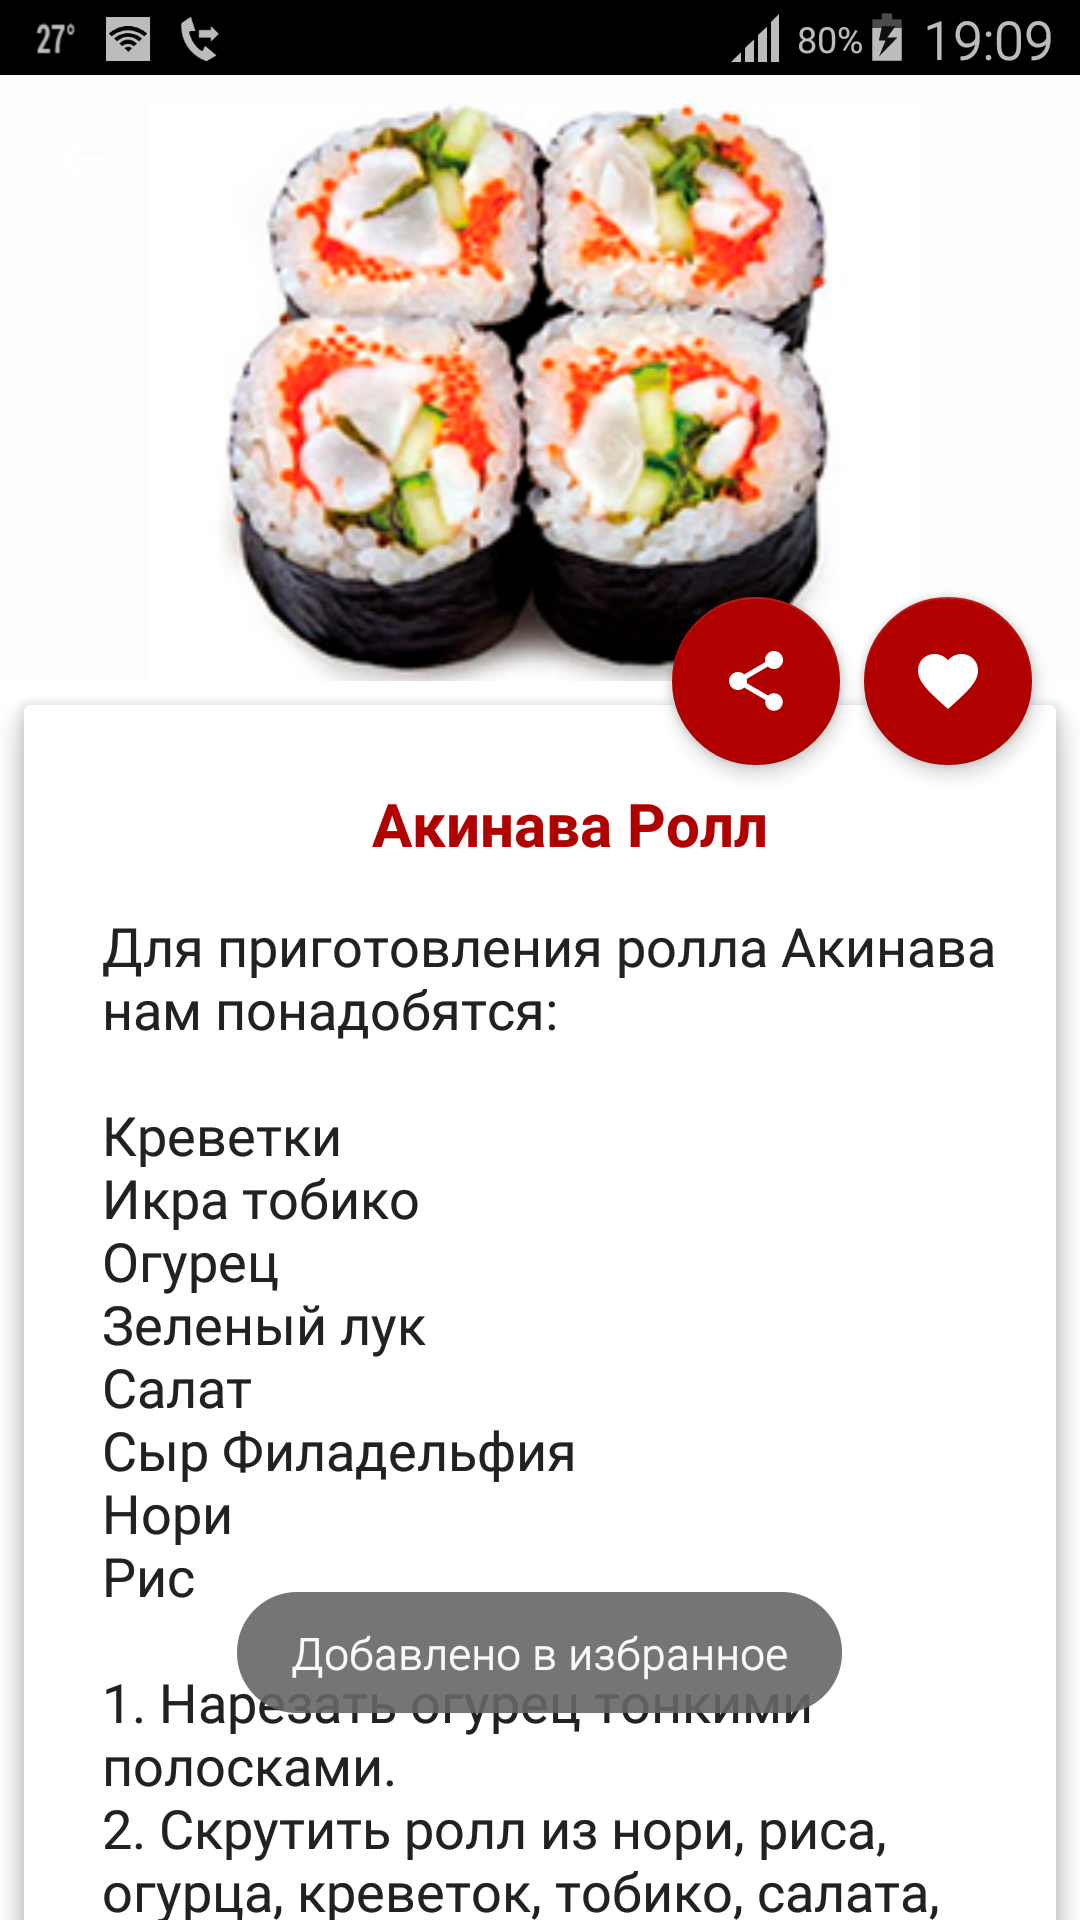 Рецепт суши и роллов запеченных фото 29